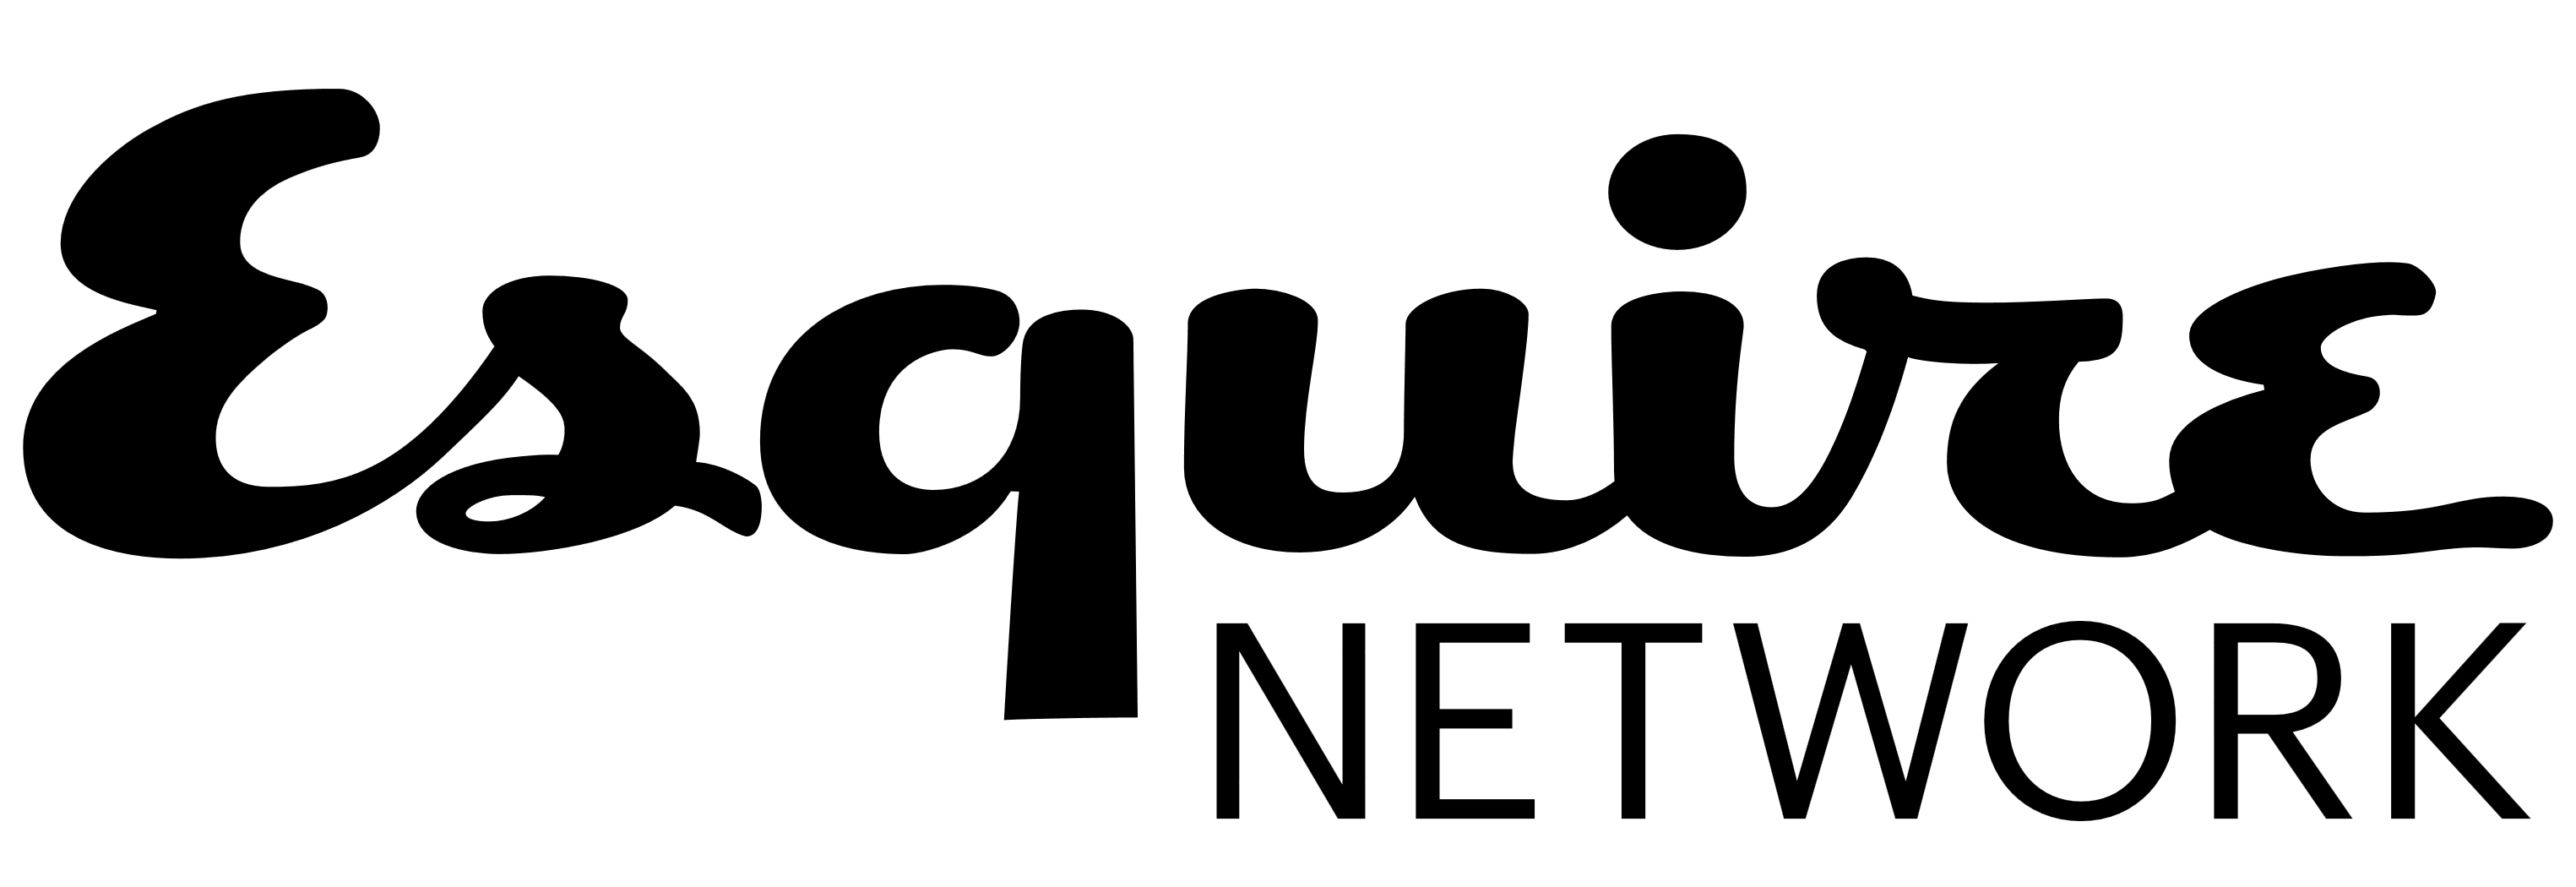 Esquire TV (Network) logo, logotype